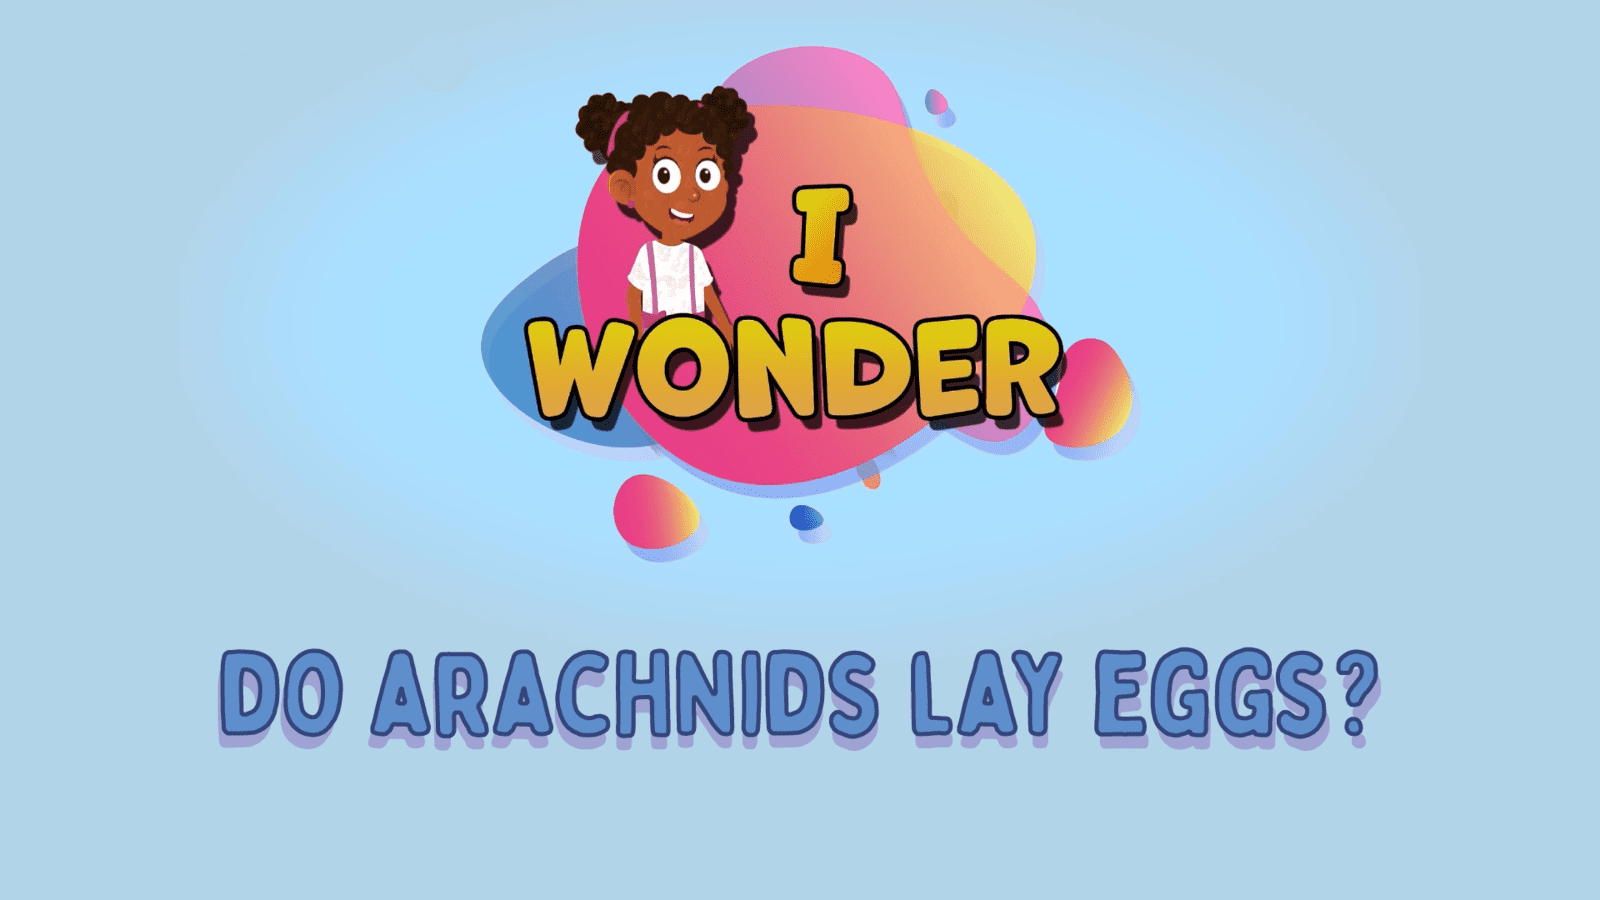 Do Arachnids Lay Eggs?